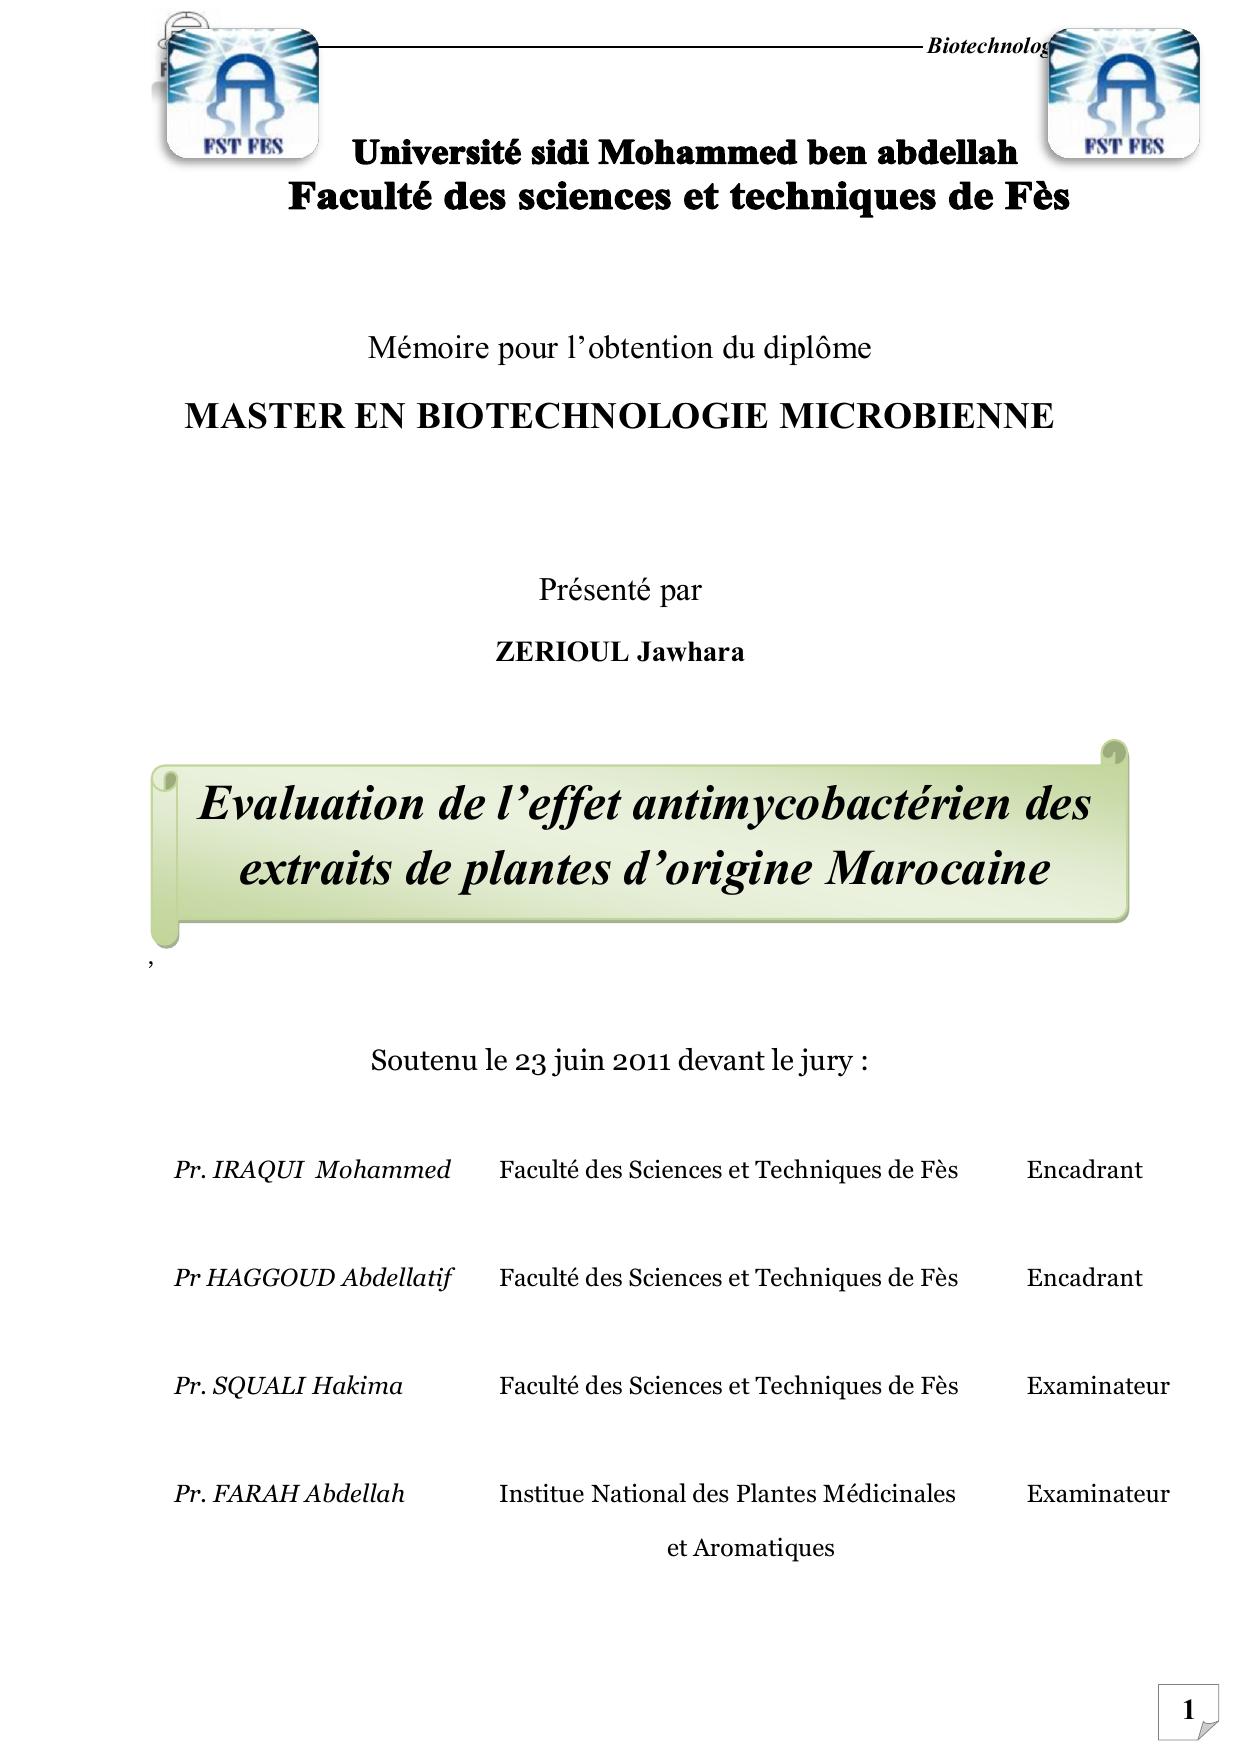 Evaluation de l’effet antimycobactérien des extraits de plantes d’origine Marocaine